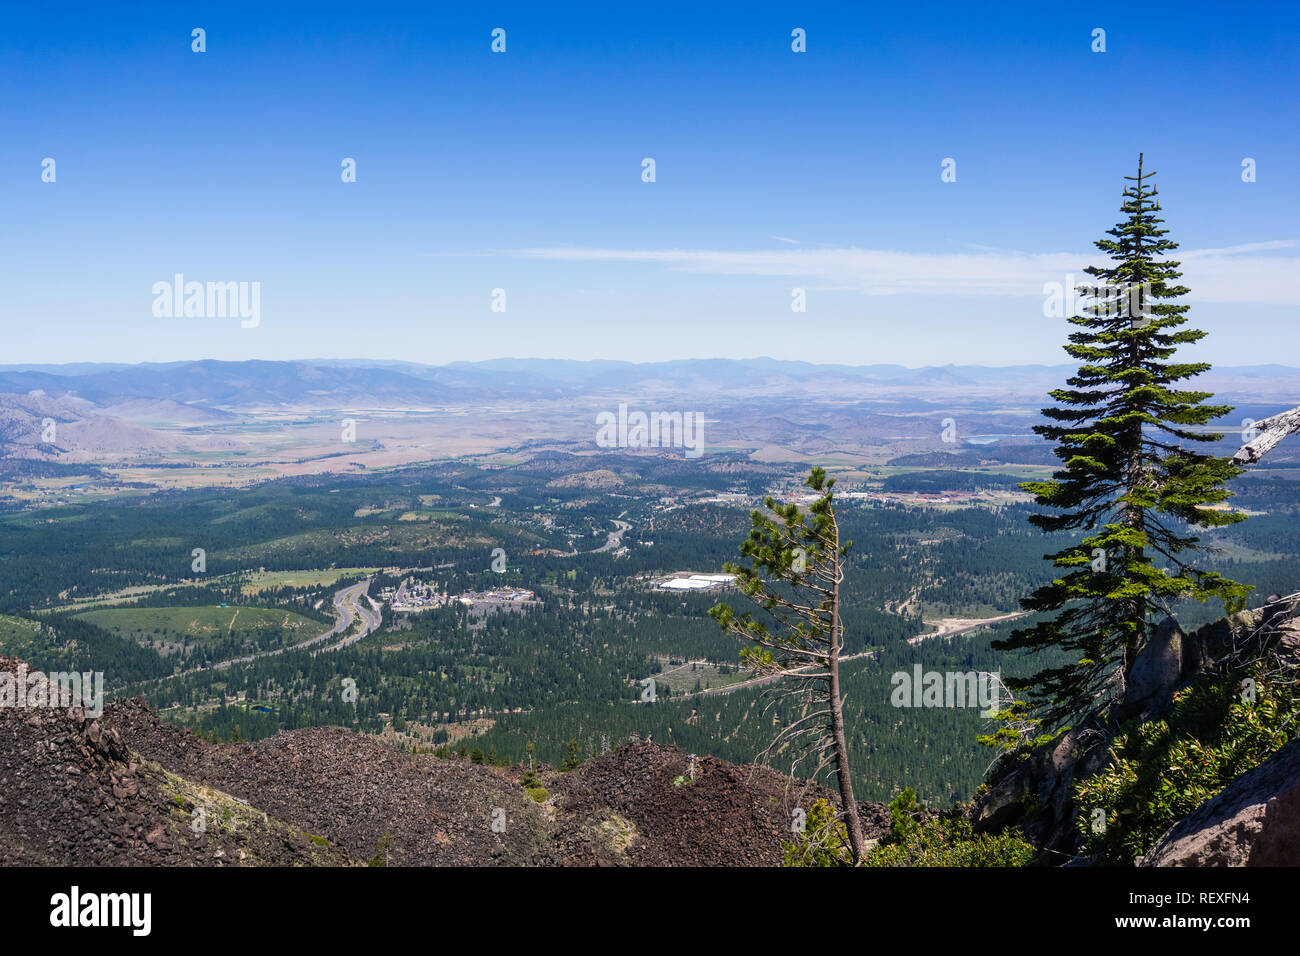 Belle vue sur la vallée au nord du Mont Shasta ; I5 interstate en passant par les petites collectivités ; le comté de Siskiyou, le nord de la Californie Banque D'Images